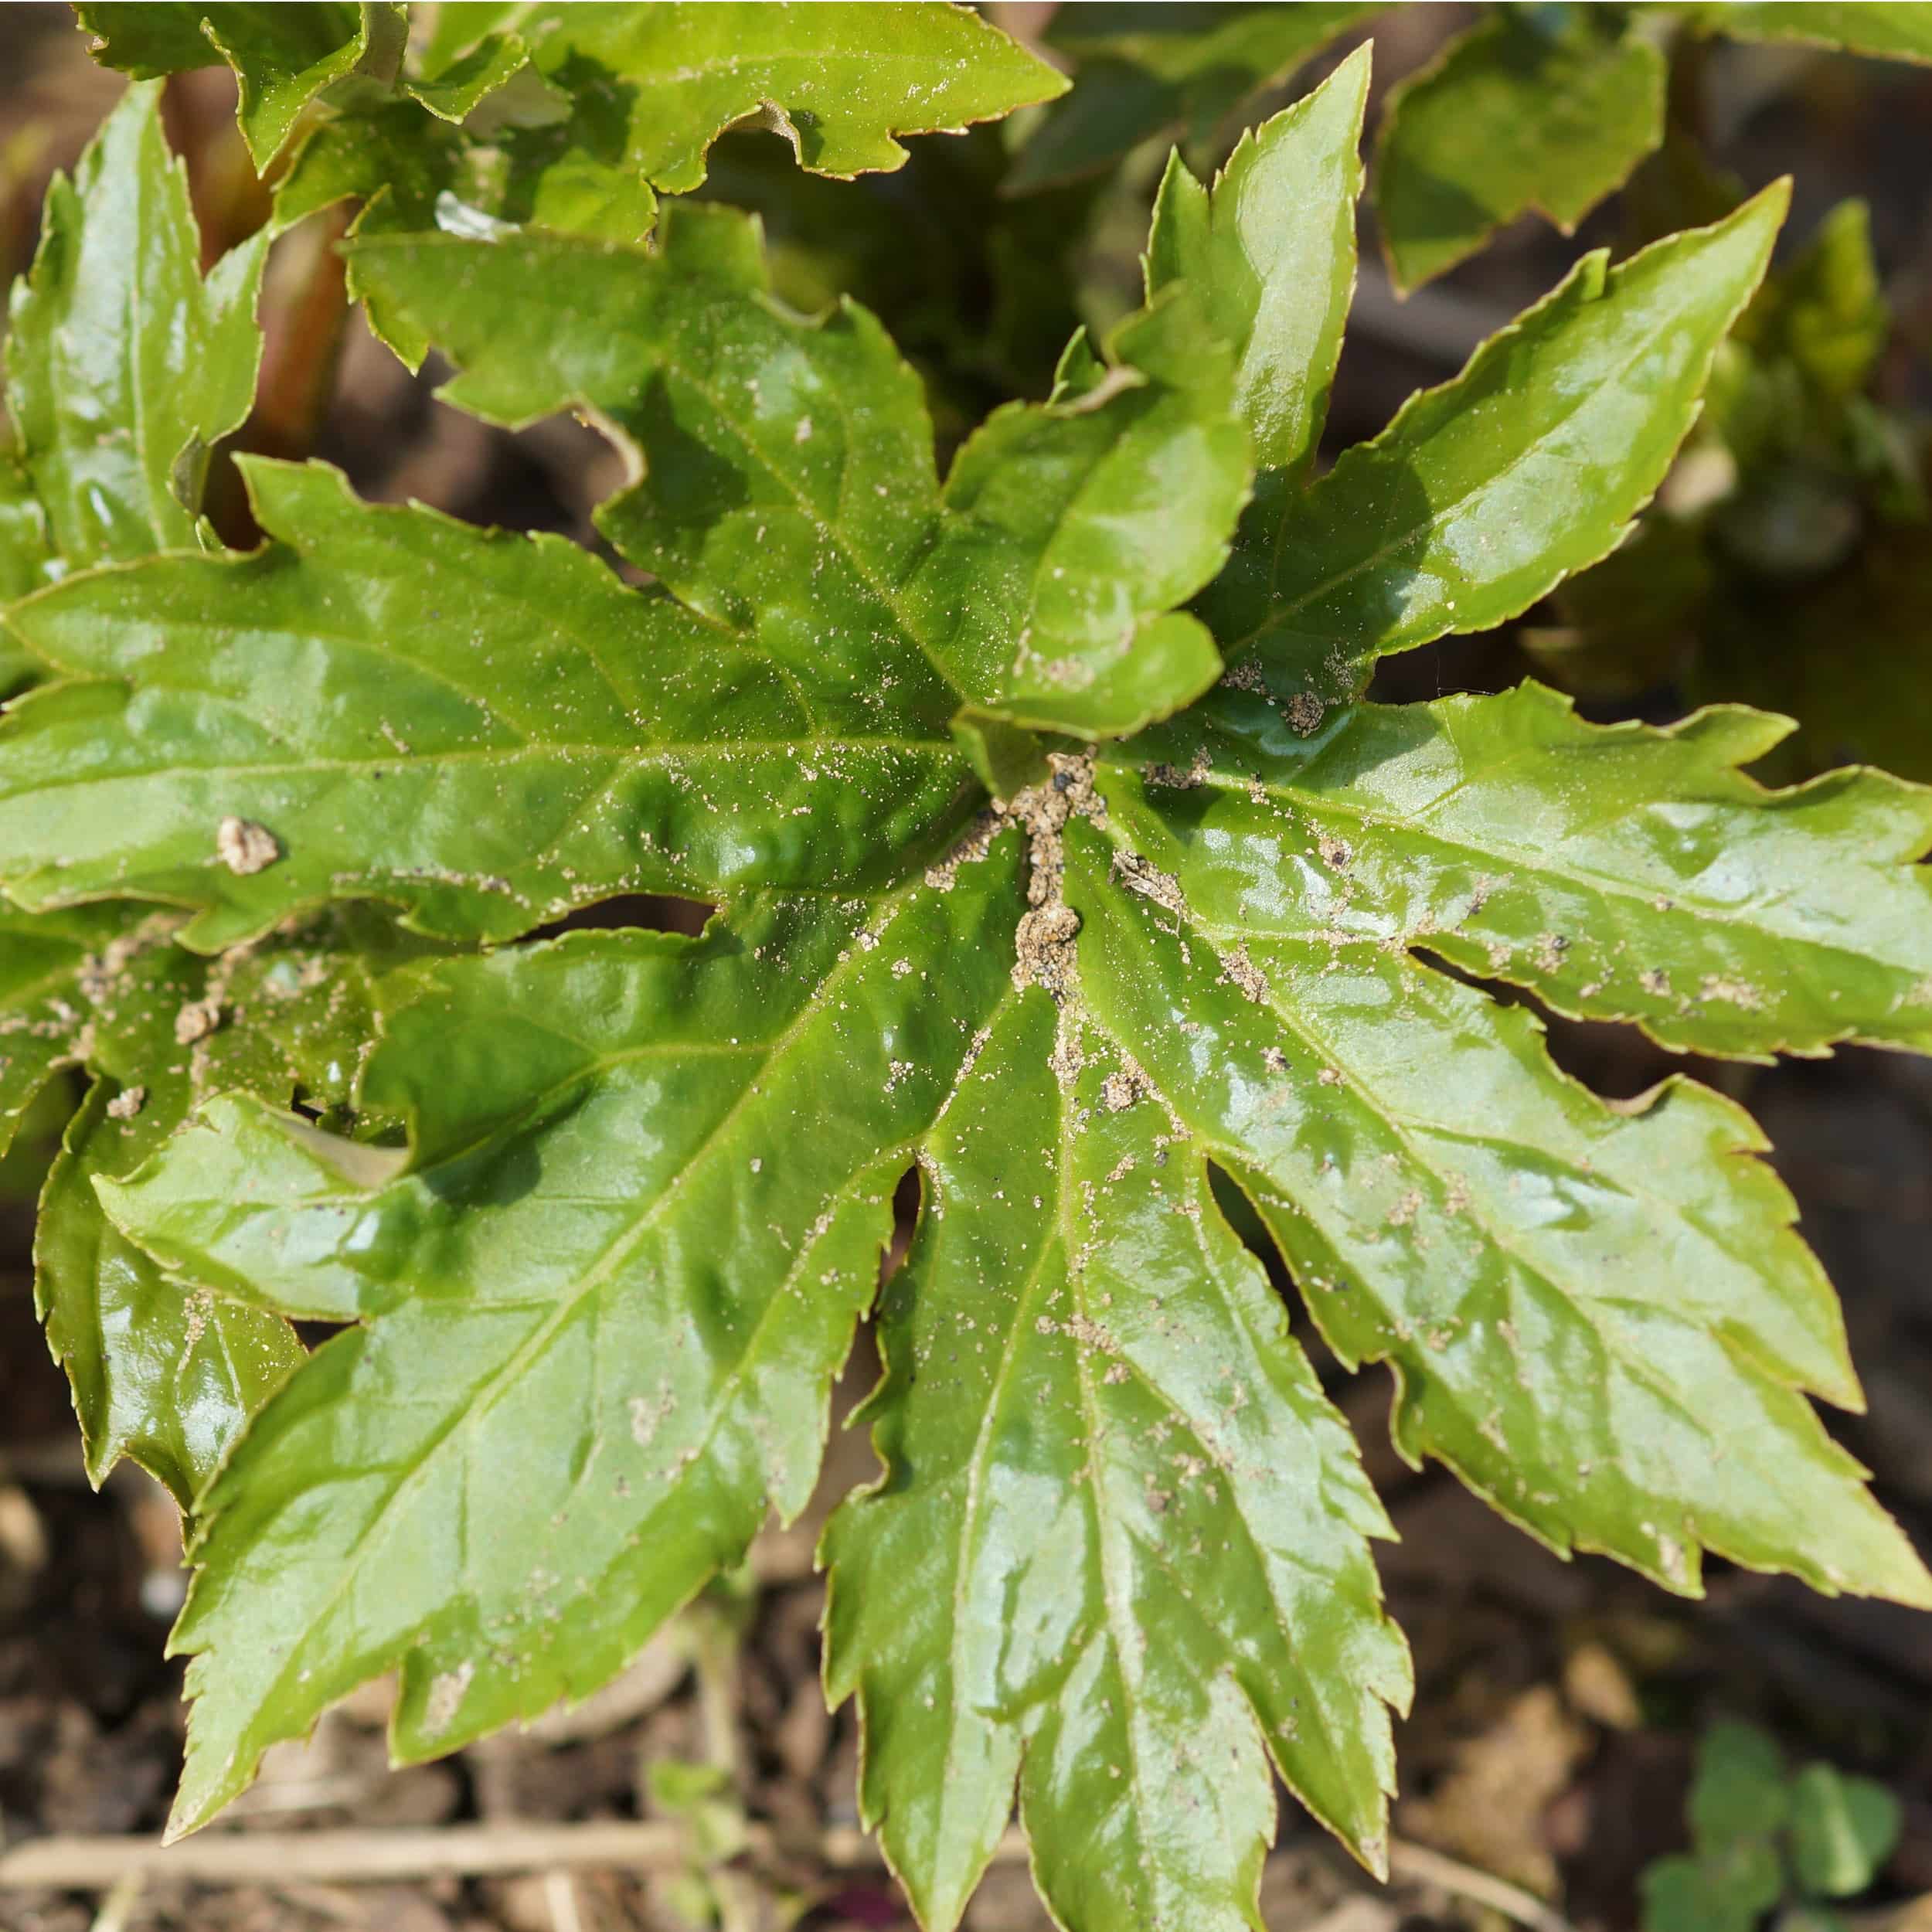 Aceriphyllum (Mukdenia) rossii - Ahornblatt